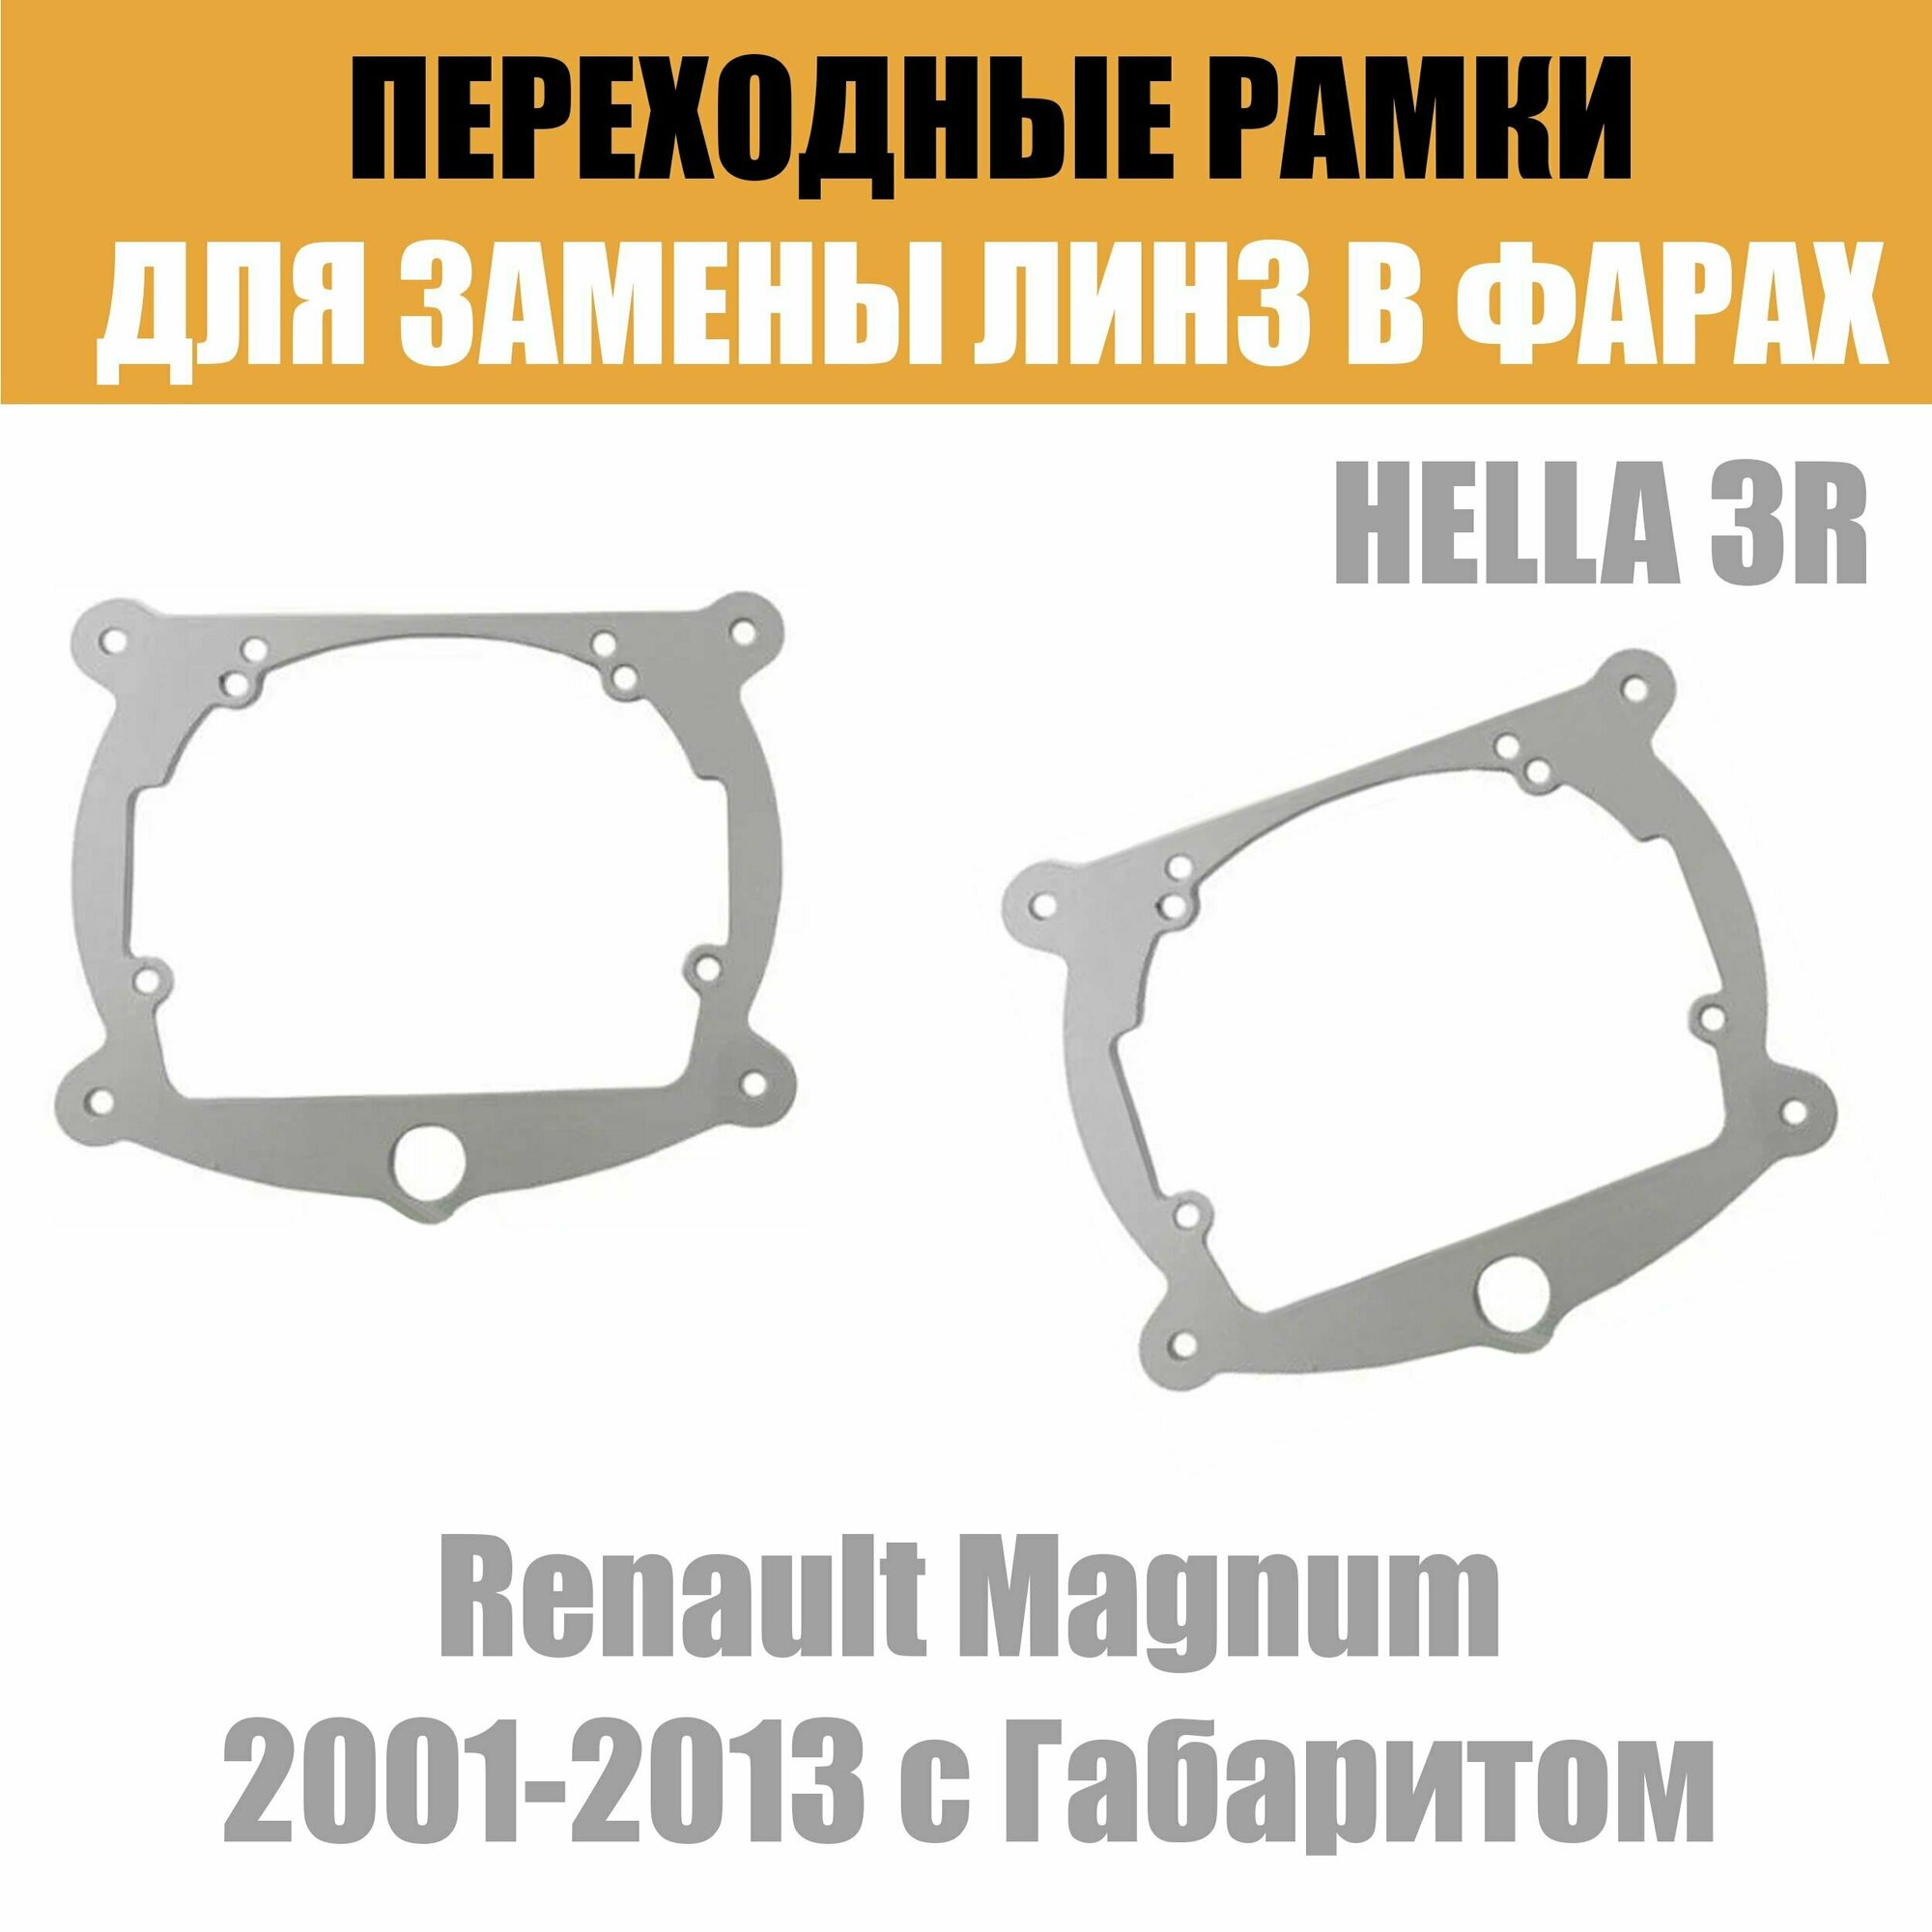 Переходные рамки для линз №8 на ГАЗ ГАЗель DAF Renault с Габаритом под модуль Hella 3R/Hella 3 (Комплект 2)